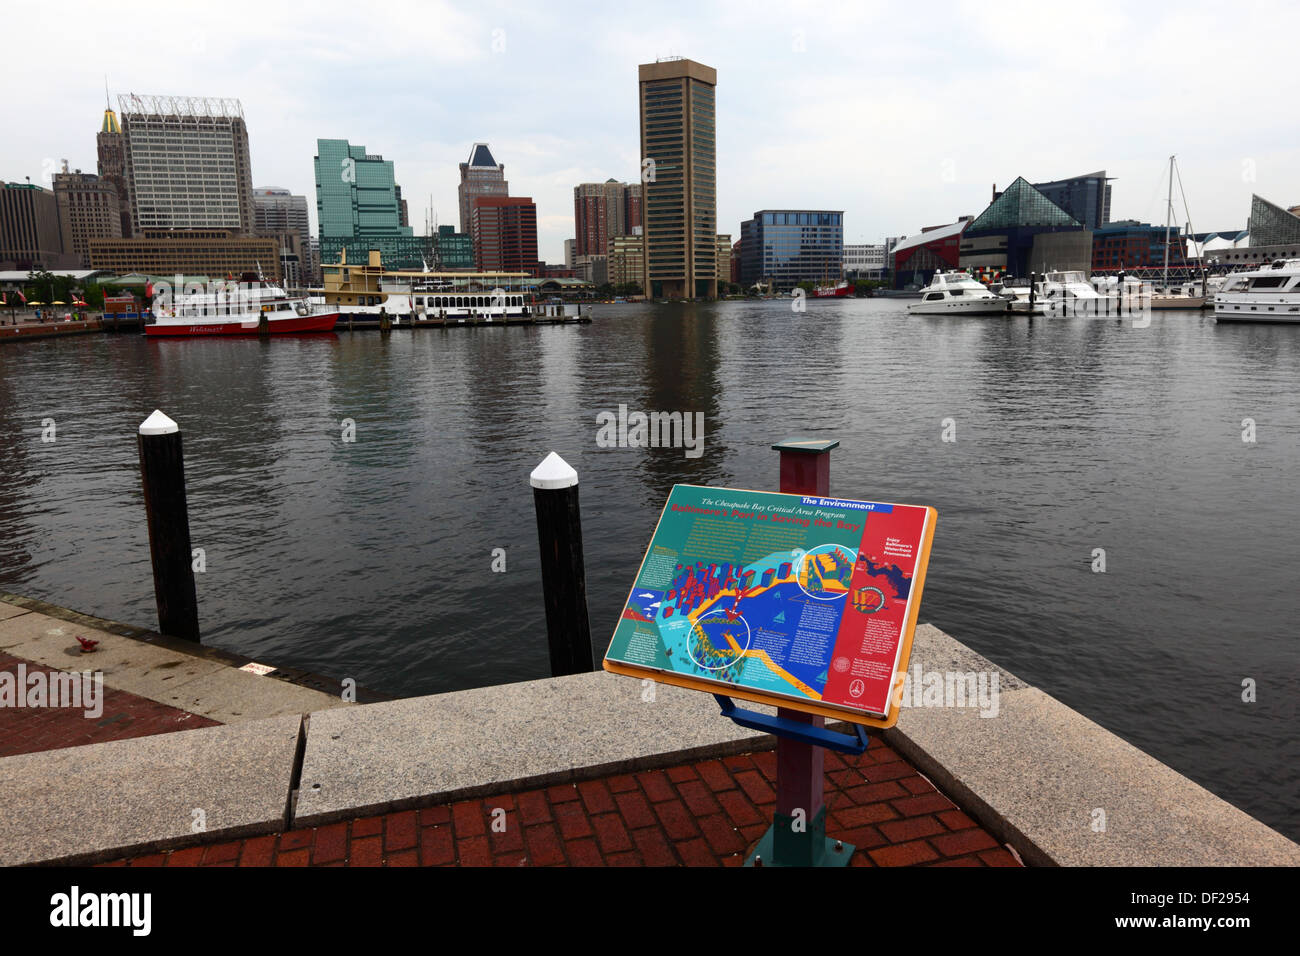 Melden Sie beschreiben die Chesapeake Bay kritischen Bereich Programm zu bereinigen, die Bucht, Innenhafen, Baltimore, Maryland, USA Stockfoto